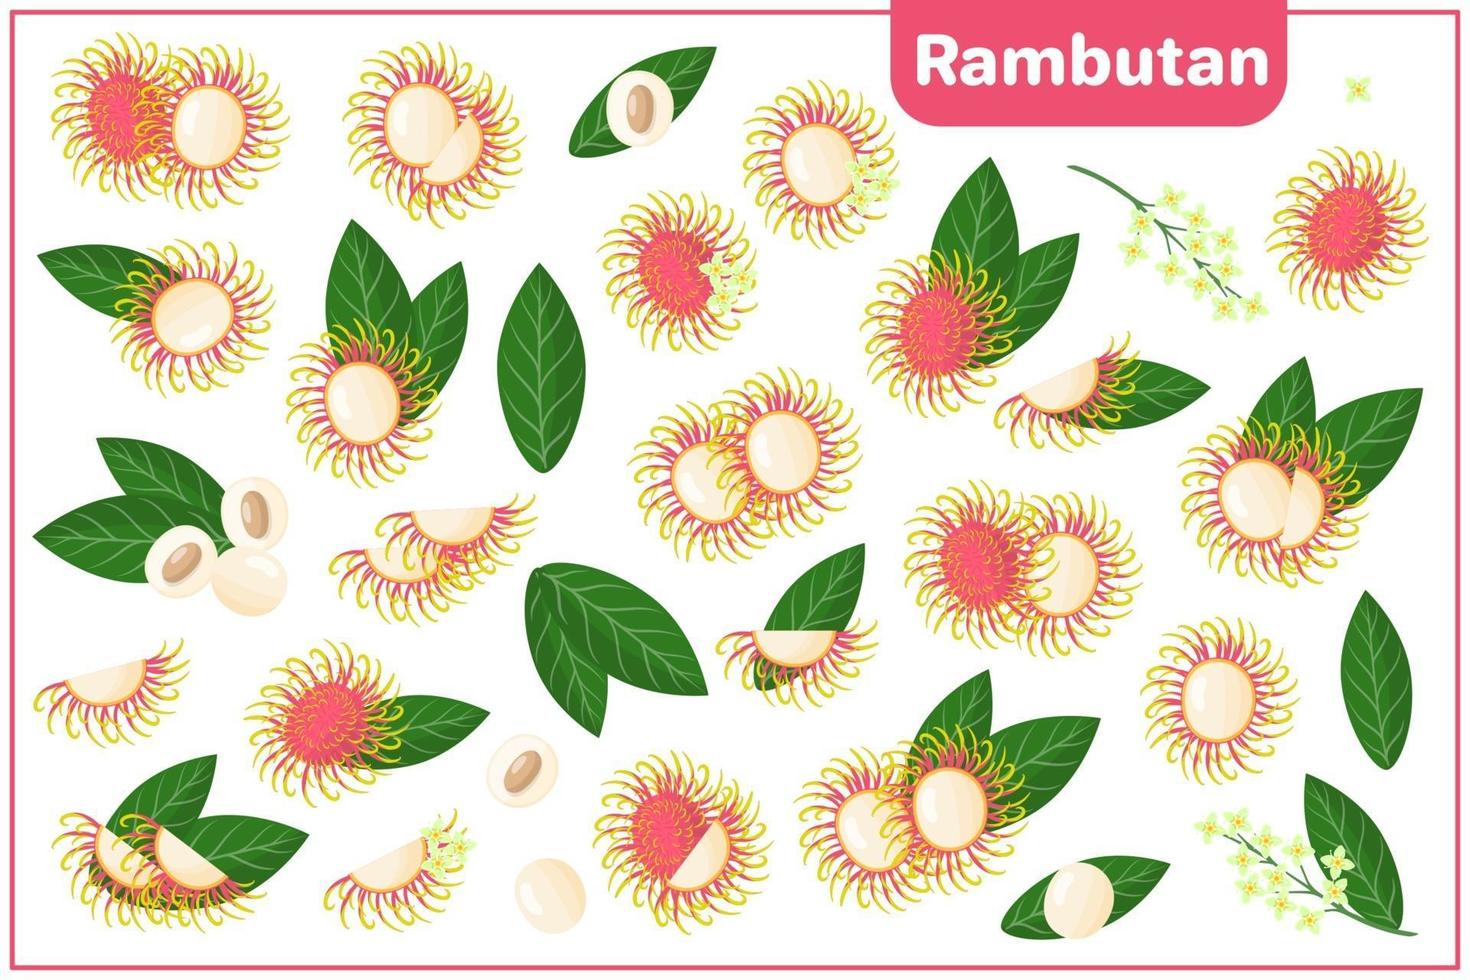 ensemble d'illustrations de dessin animé de vecteur avec des fruits exotiques de ramboutan, des fleurs et des feuilles isolés sur fond blanc